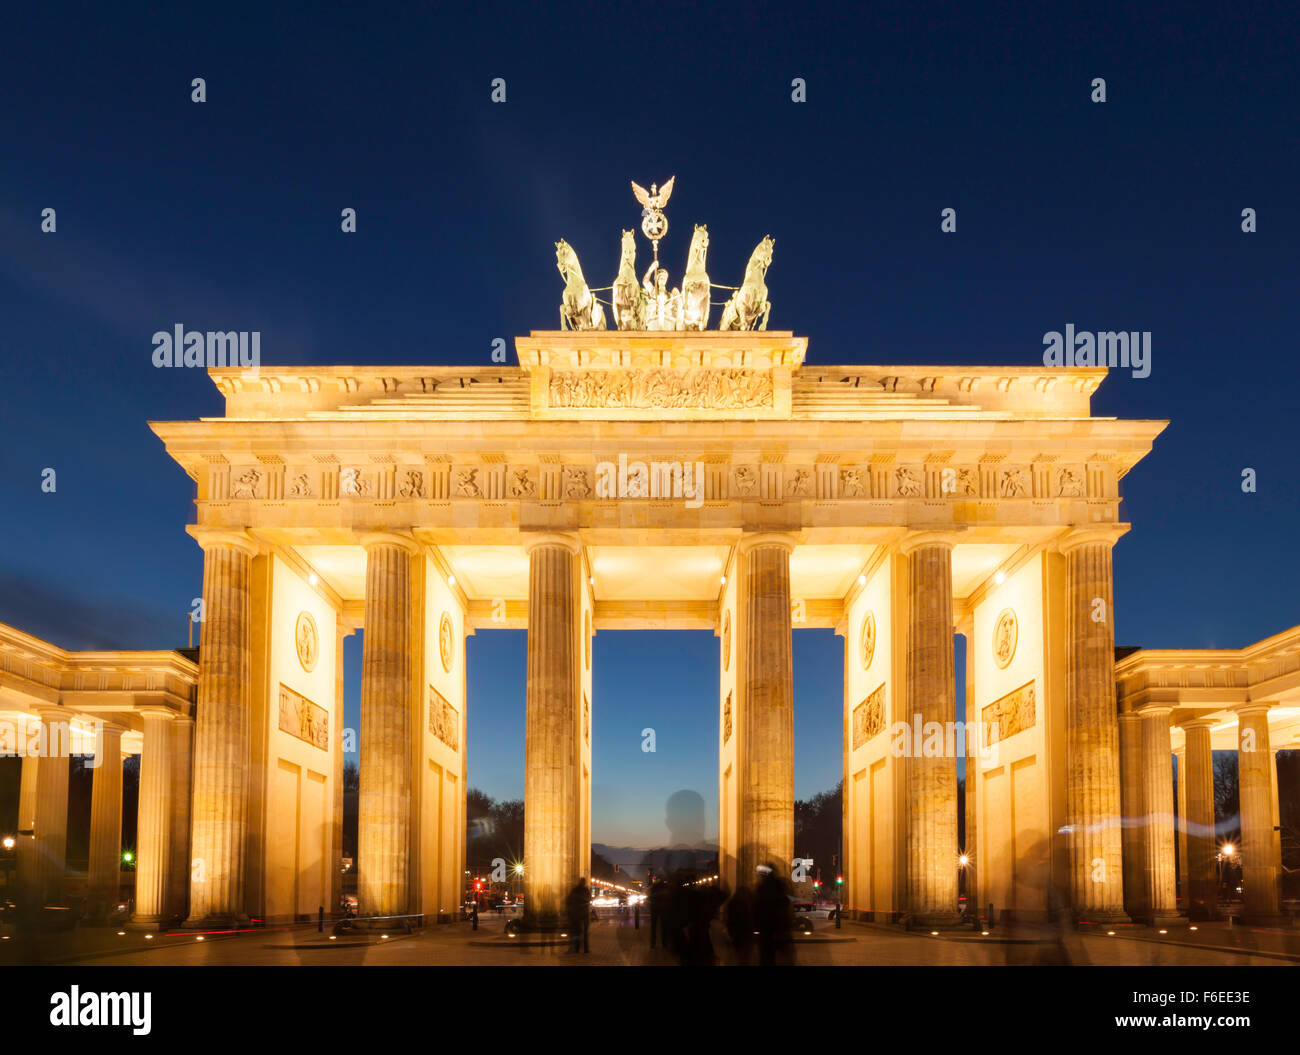 Berlino, illuminato dalla Porta di Brandeburgo al tramonto, una lunga esposizione shot con sagome fantasma di turisti nella parte anteriore Foto Stock